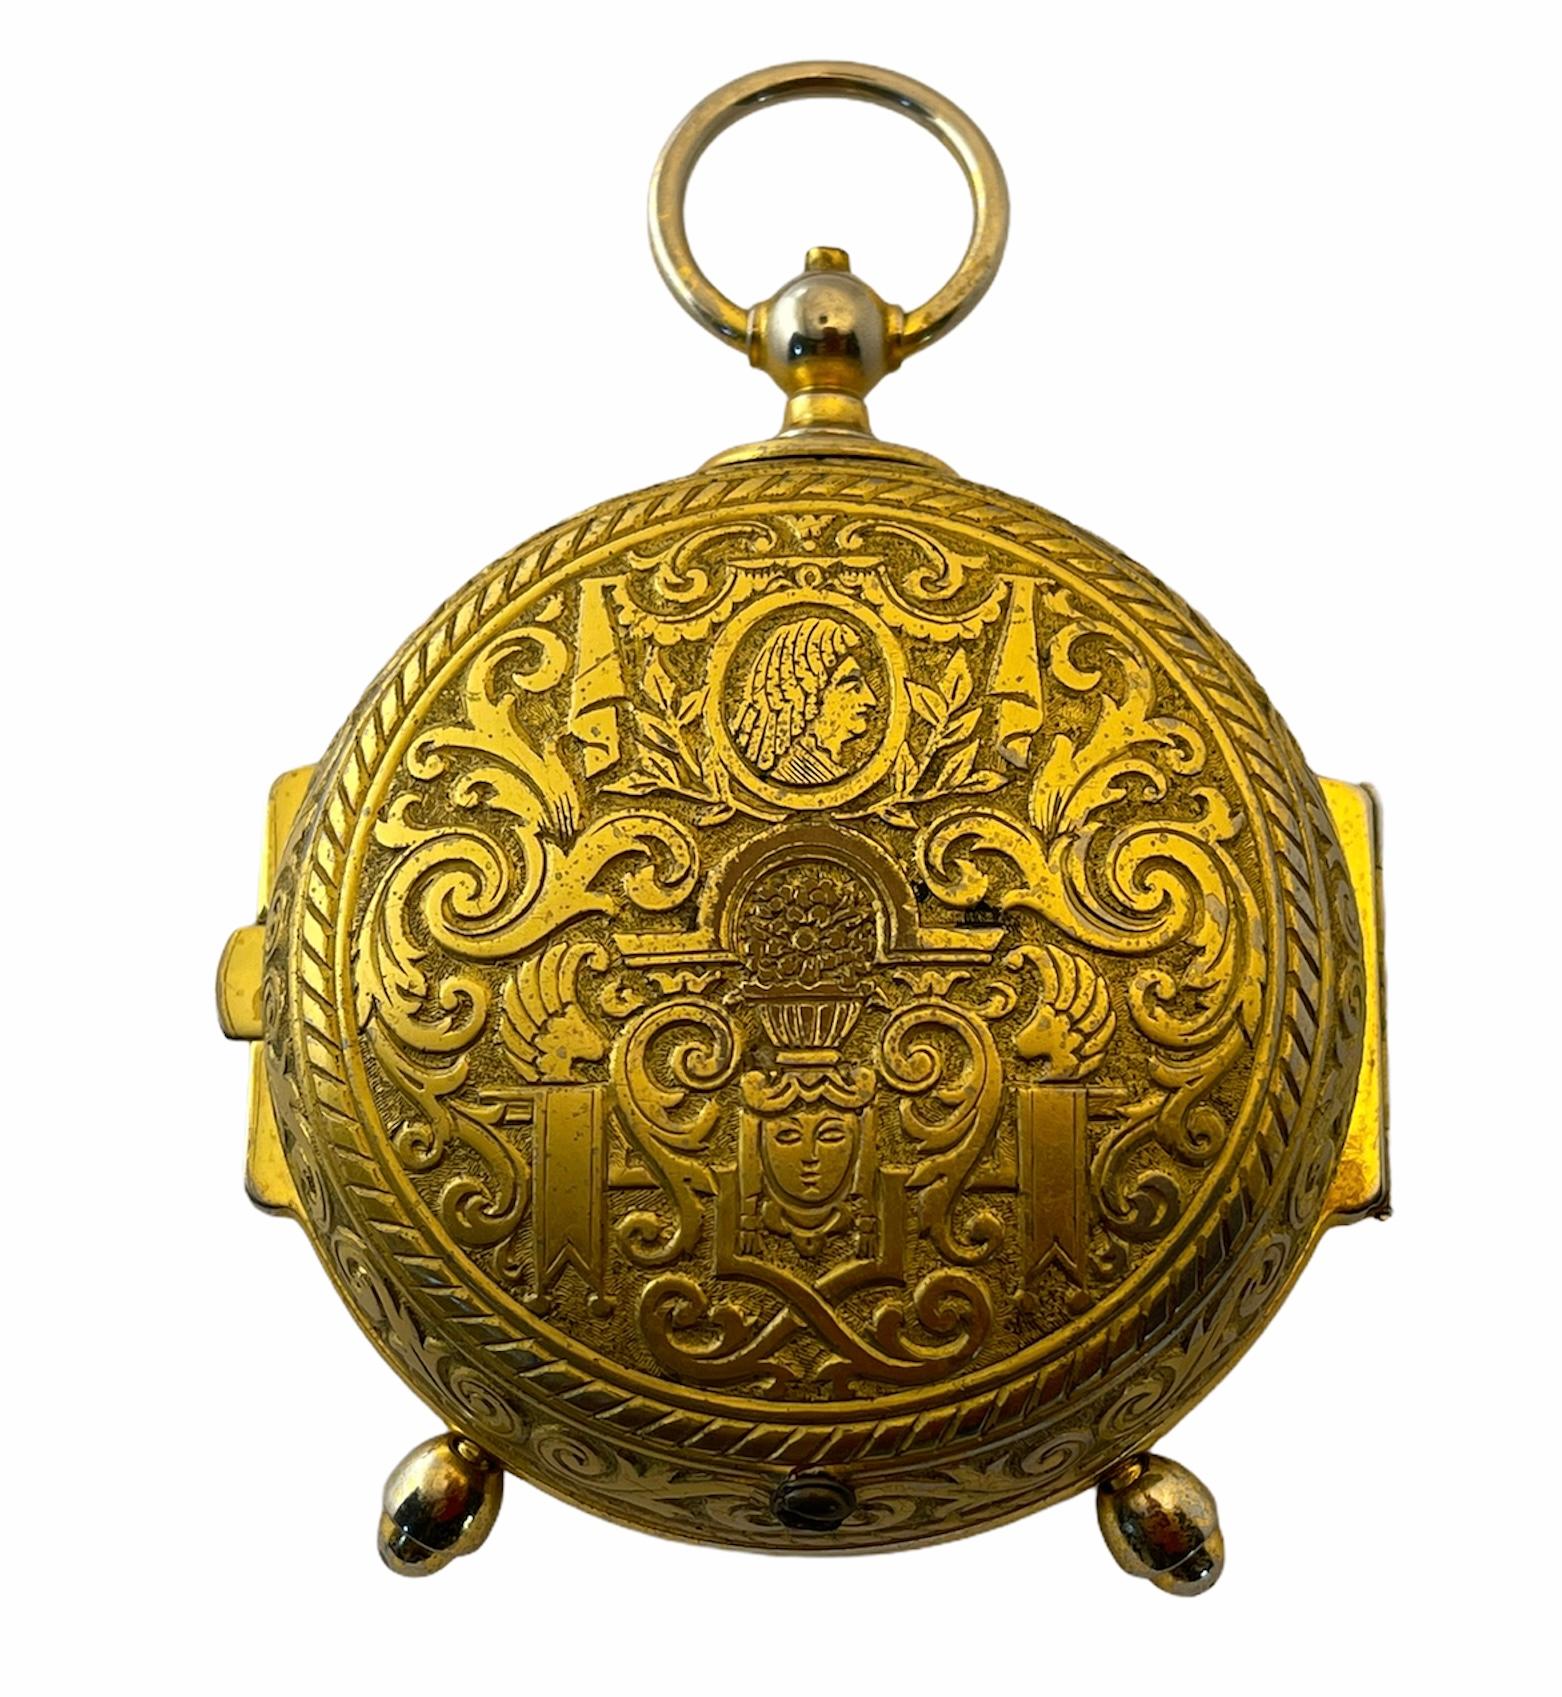 Dies ist eine runde Schweizer Uhr mit 15 Juwelen. Es zeigt eine runde Frontplatte aus Emaille, die mit einem farbenfrohen, schönen Blumenstrauß bemalt ist, umrahmt von einem Zifferblatt mit vergoldeten römischen Ziffern aus Bronze. Auf der Rückseite